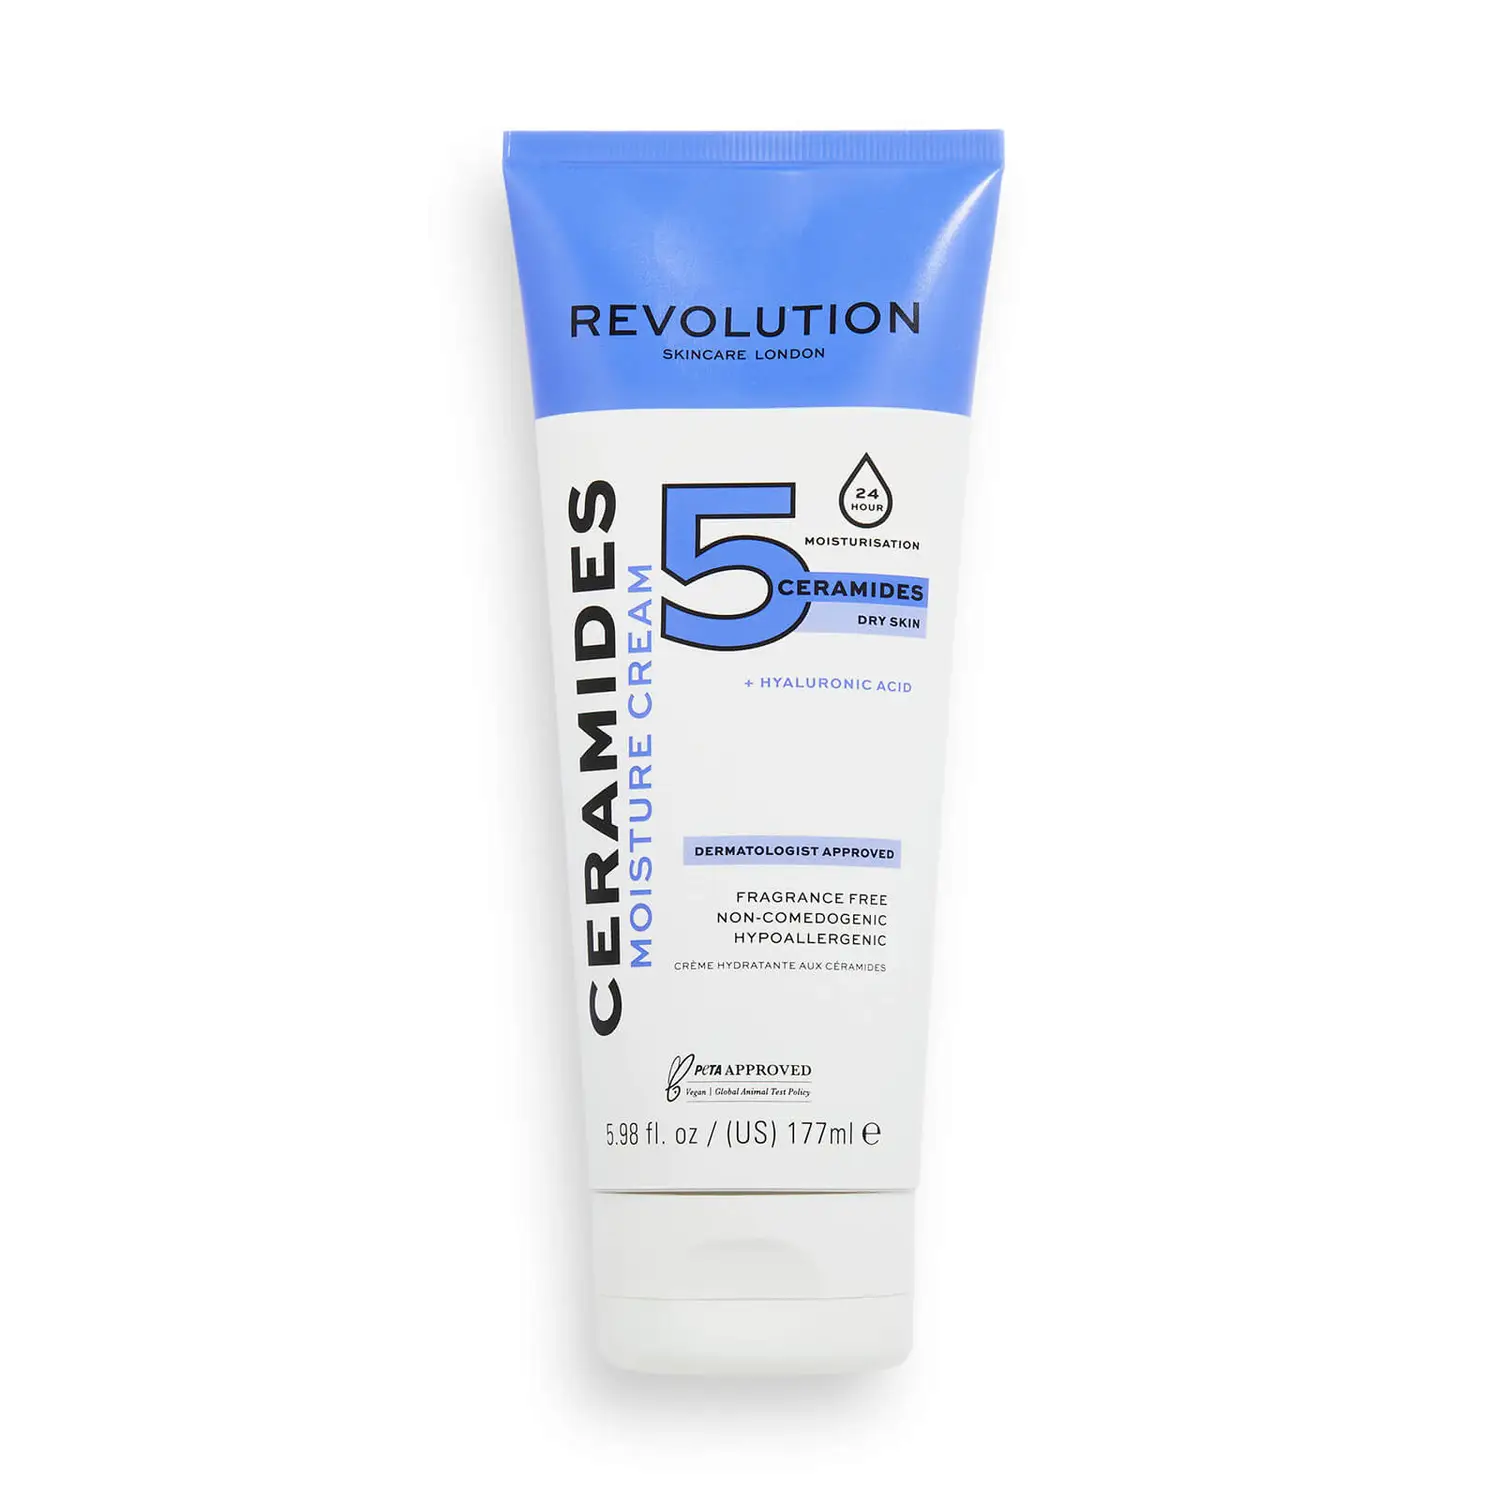 Revolution Skincare Ceramides Увлажняющий крем увлажняющий крем для ухода за лицом ceramides moisture cream revolution skincare 177 мл